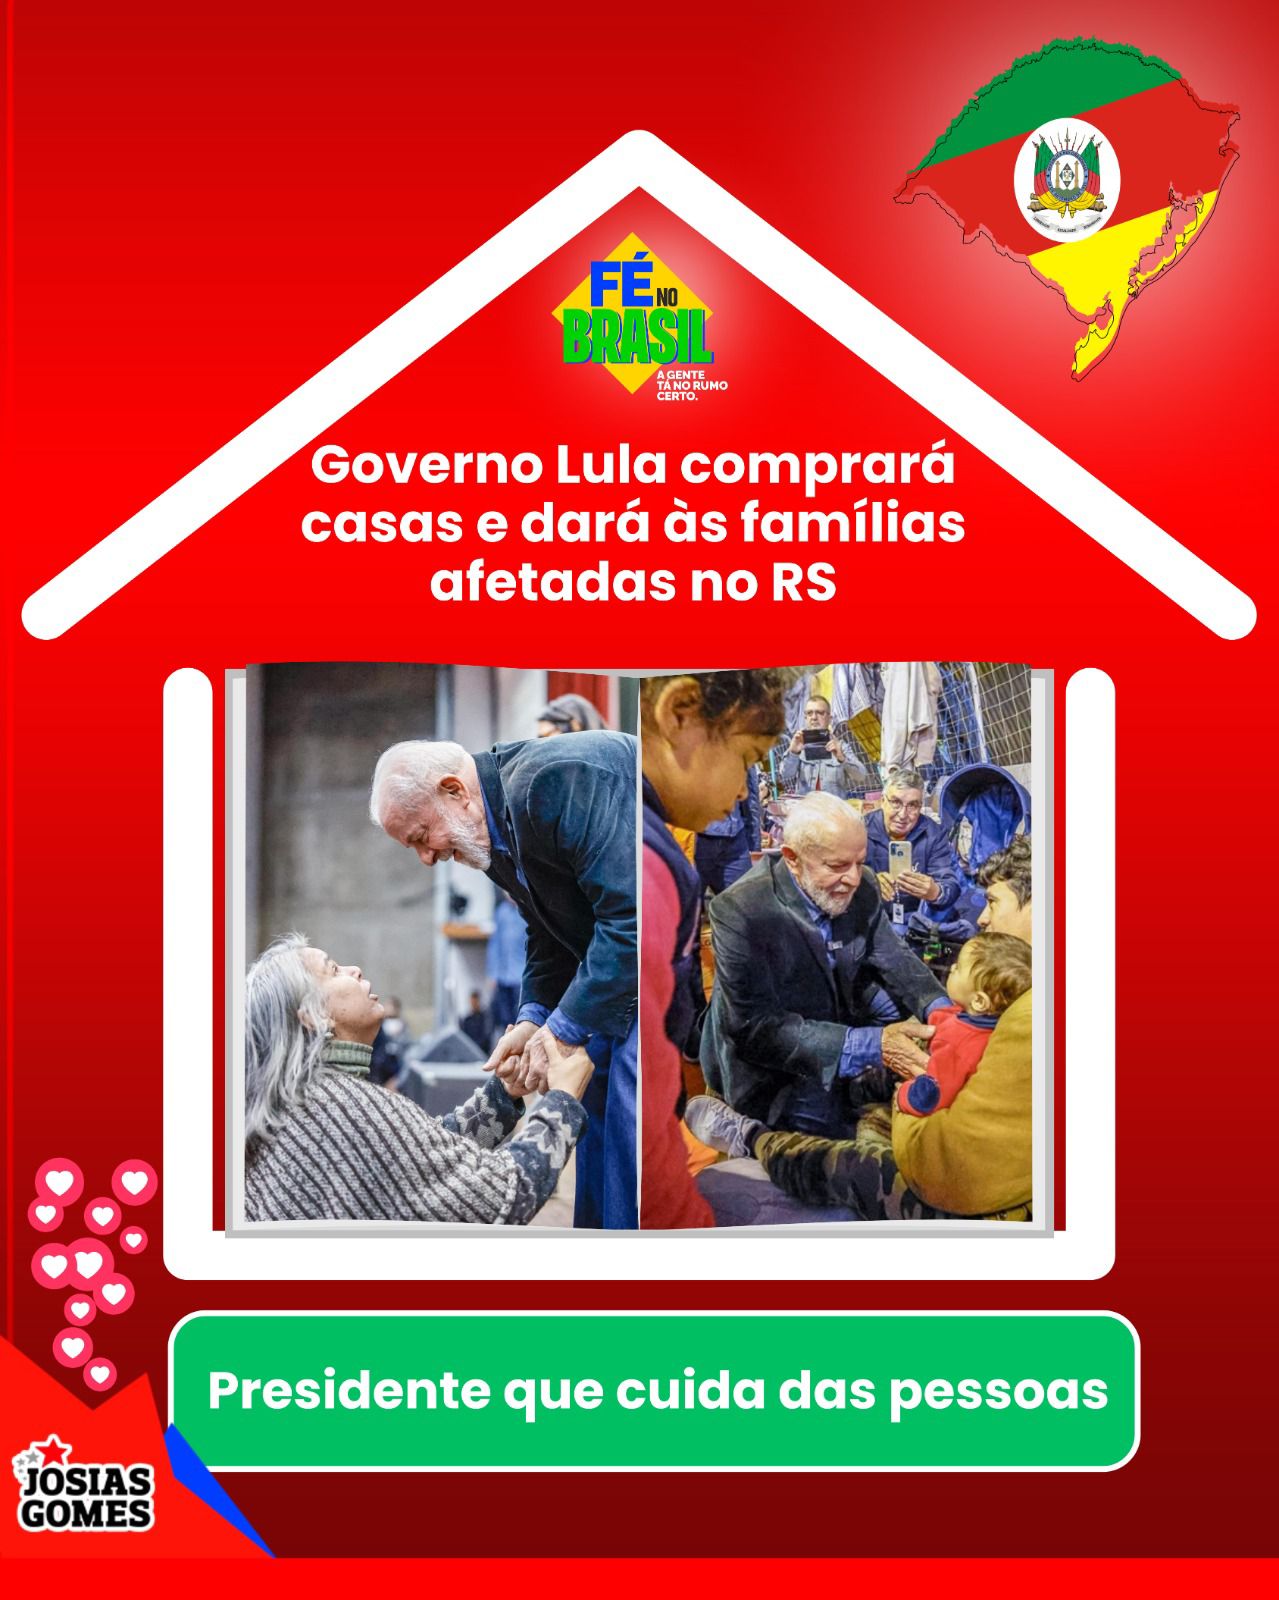 Presidente Lula Se Compromete A Garantir Moradia Para Quem Perdeu Casa No Rio Grande Do Sul